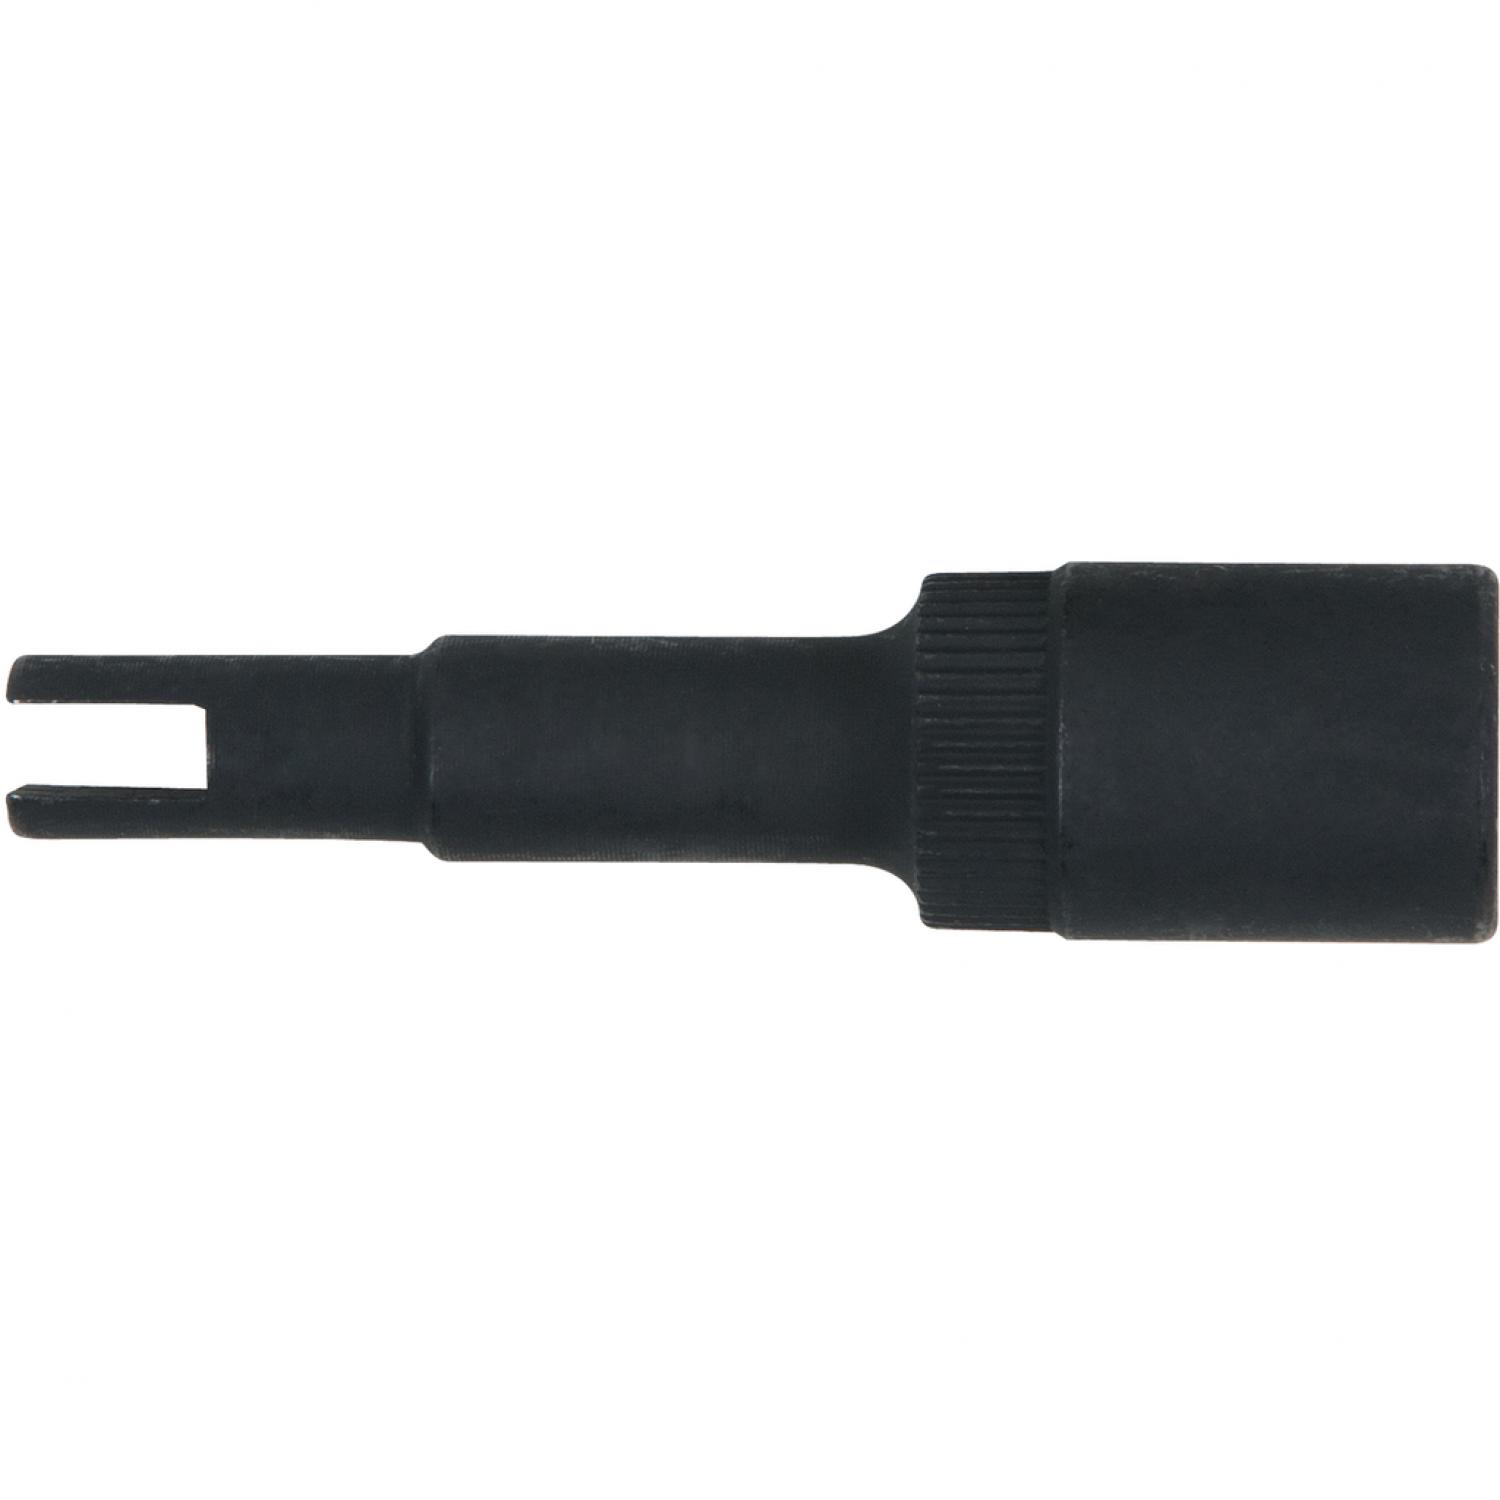 Торцовая головка с битом для нерегулируемого дросселя системы кондиционирования, 3,2 мм